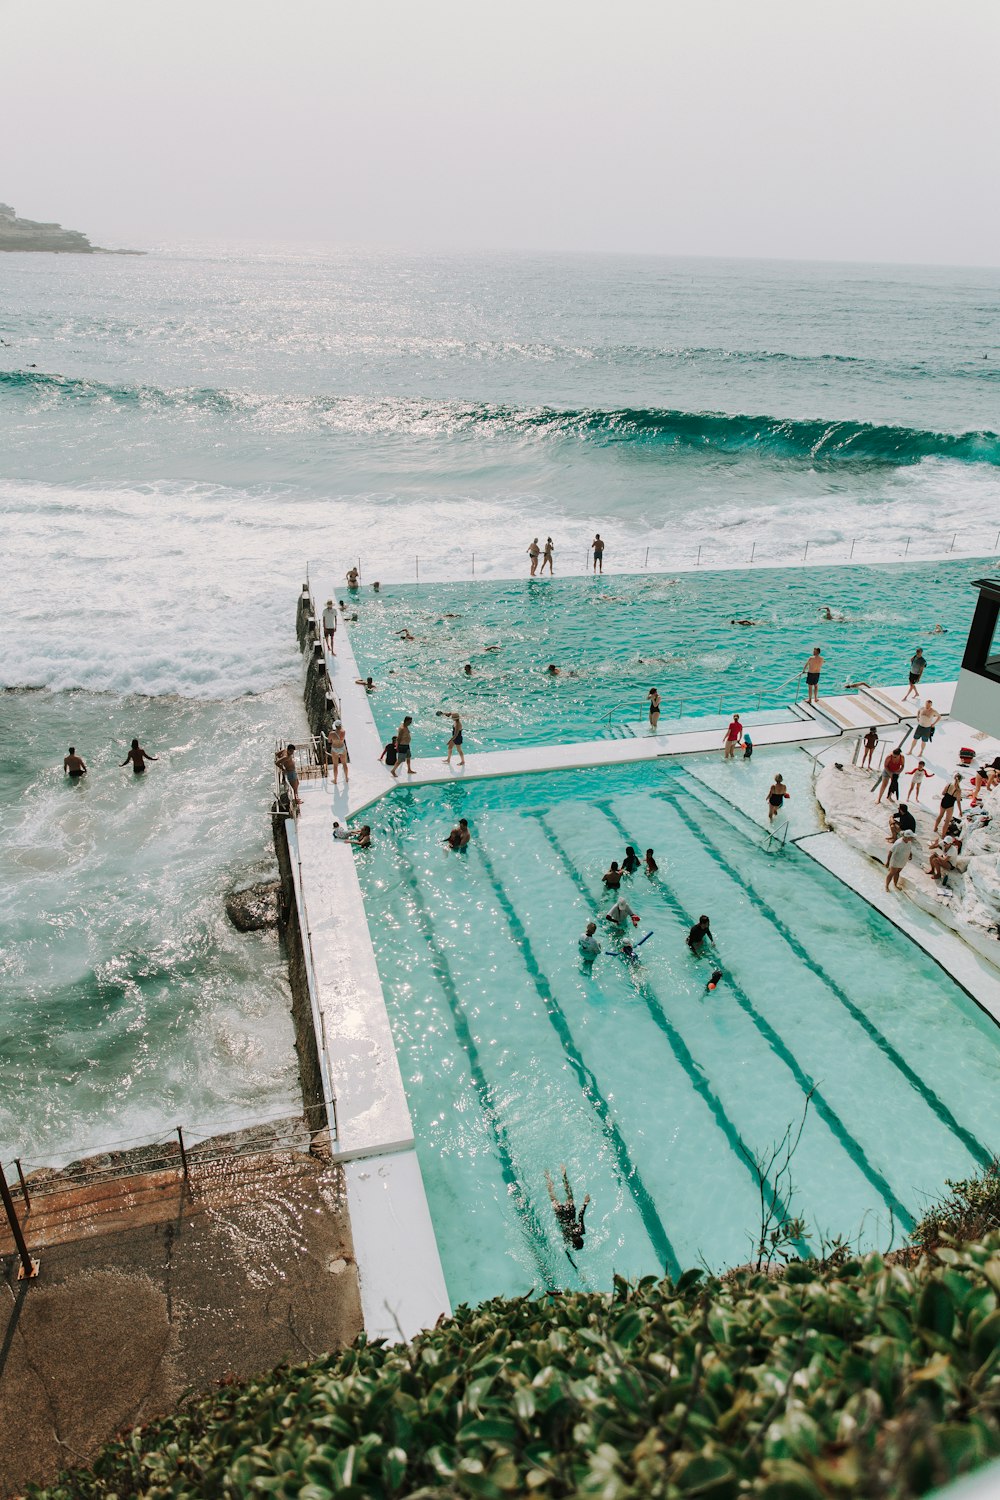 Fotografie von Menschen, die sich tagsüber in der Nähe des Swimmingpools am Meer versammeln